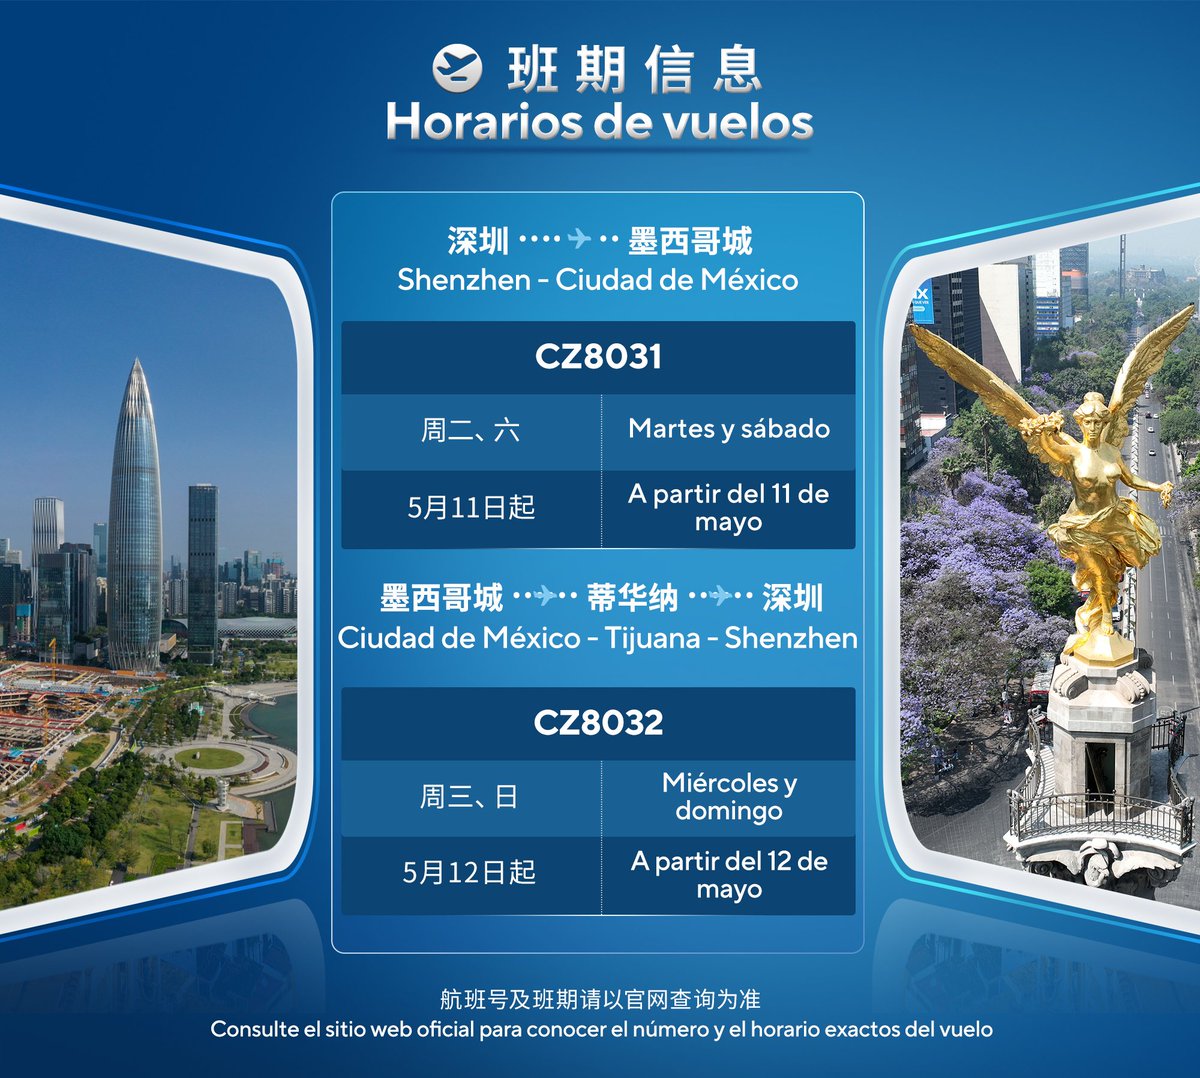 ¡Felicitaciones! A partir del 11 de mayo, China Southern Airlines inaugurará el vuelo directo Shenzhen-Ciudad de México, el primero de pasajeros sin escalas entre China y México y China y ALC, que facilitará en gran medida el intercambio del personal entre ambas partes.